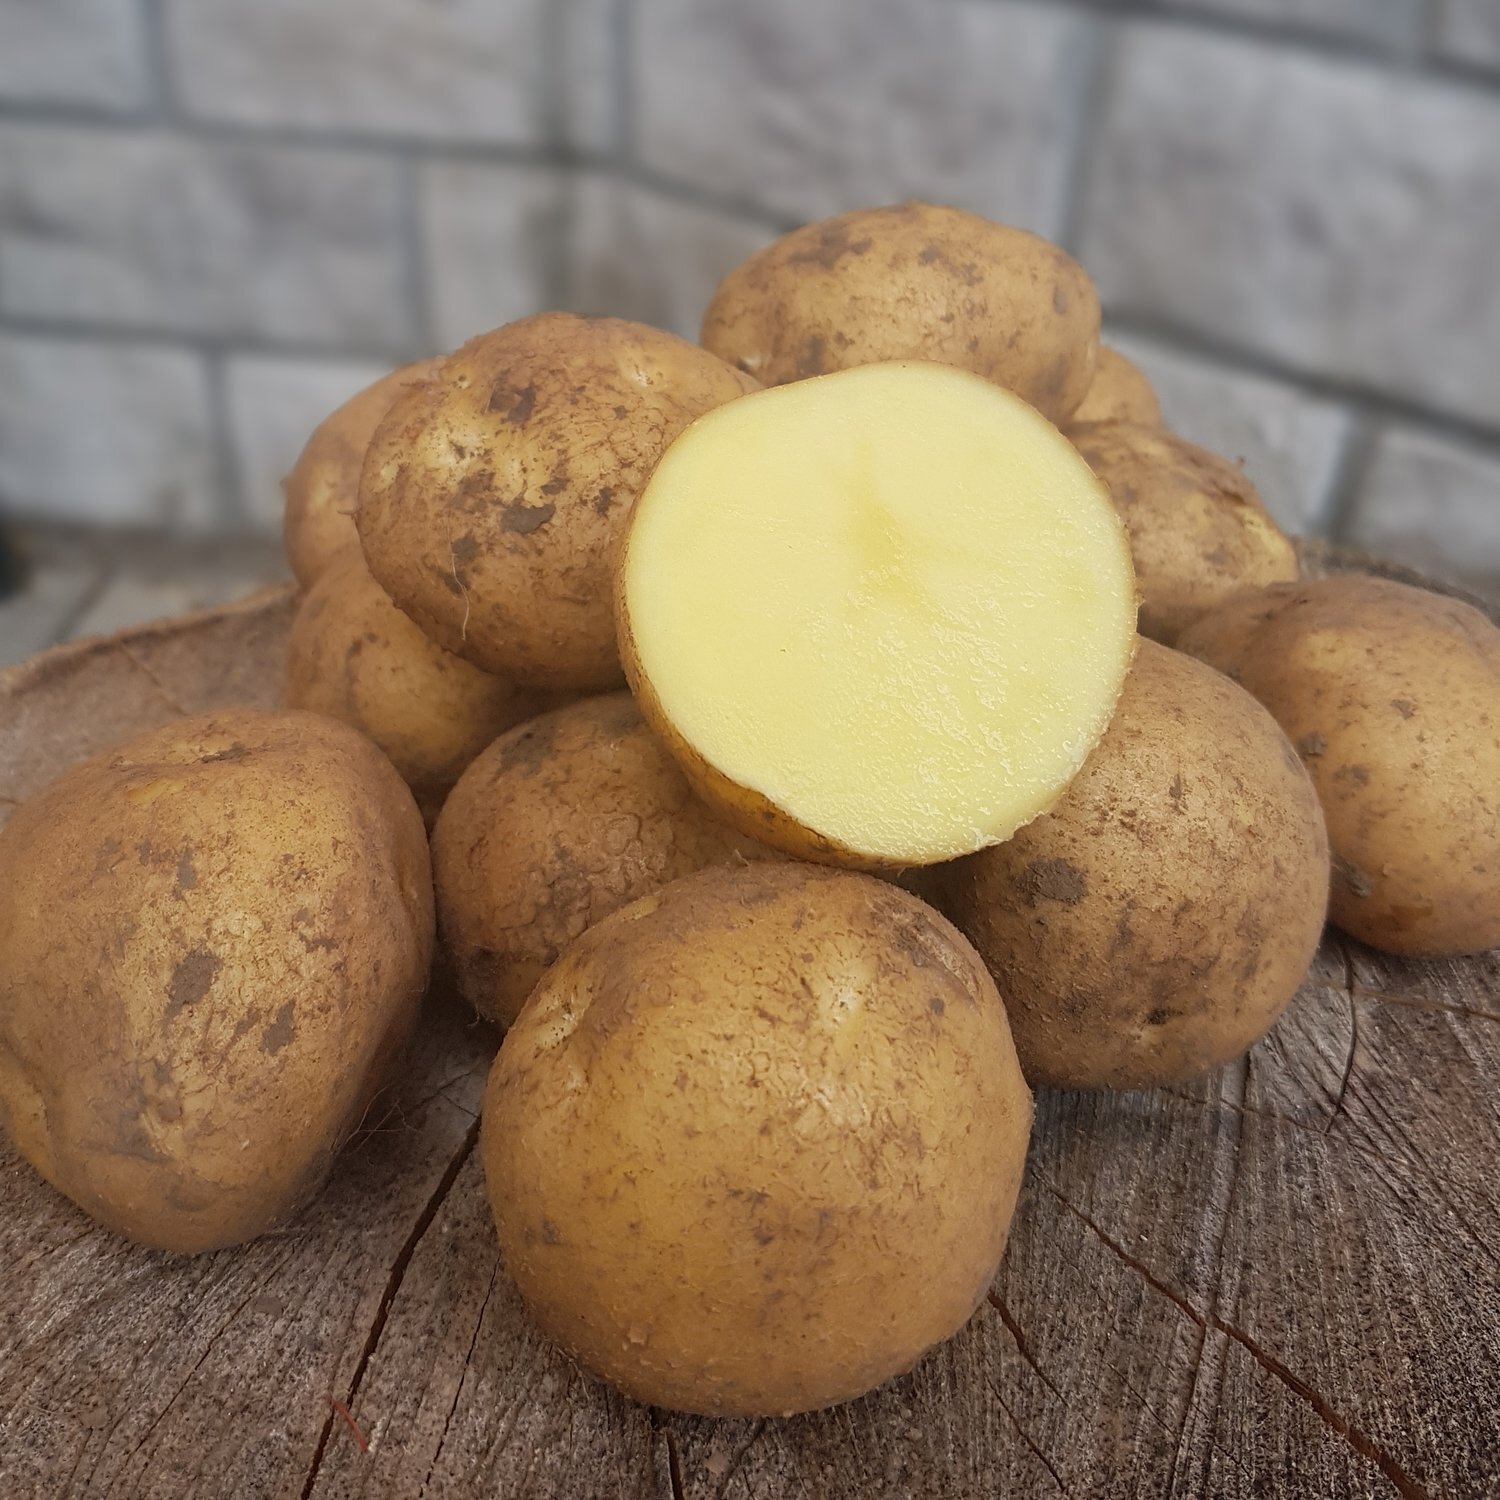 сорта картофеля с мякотью фото